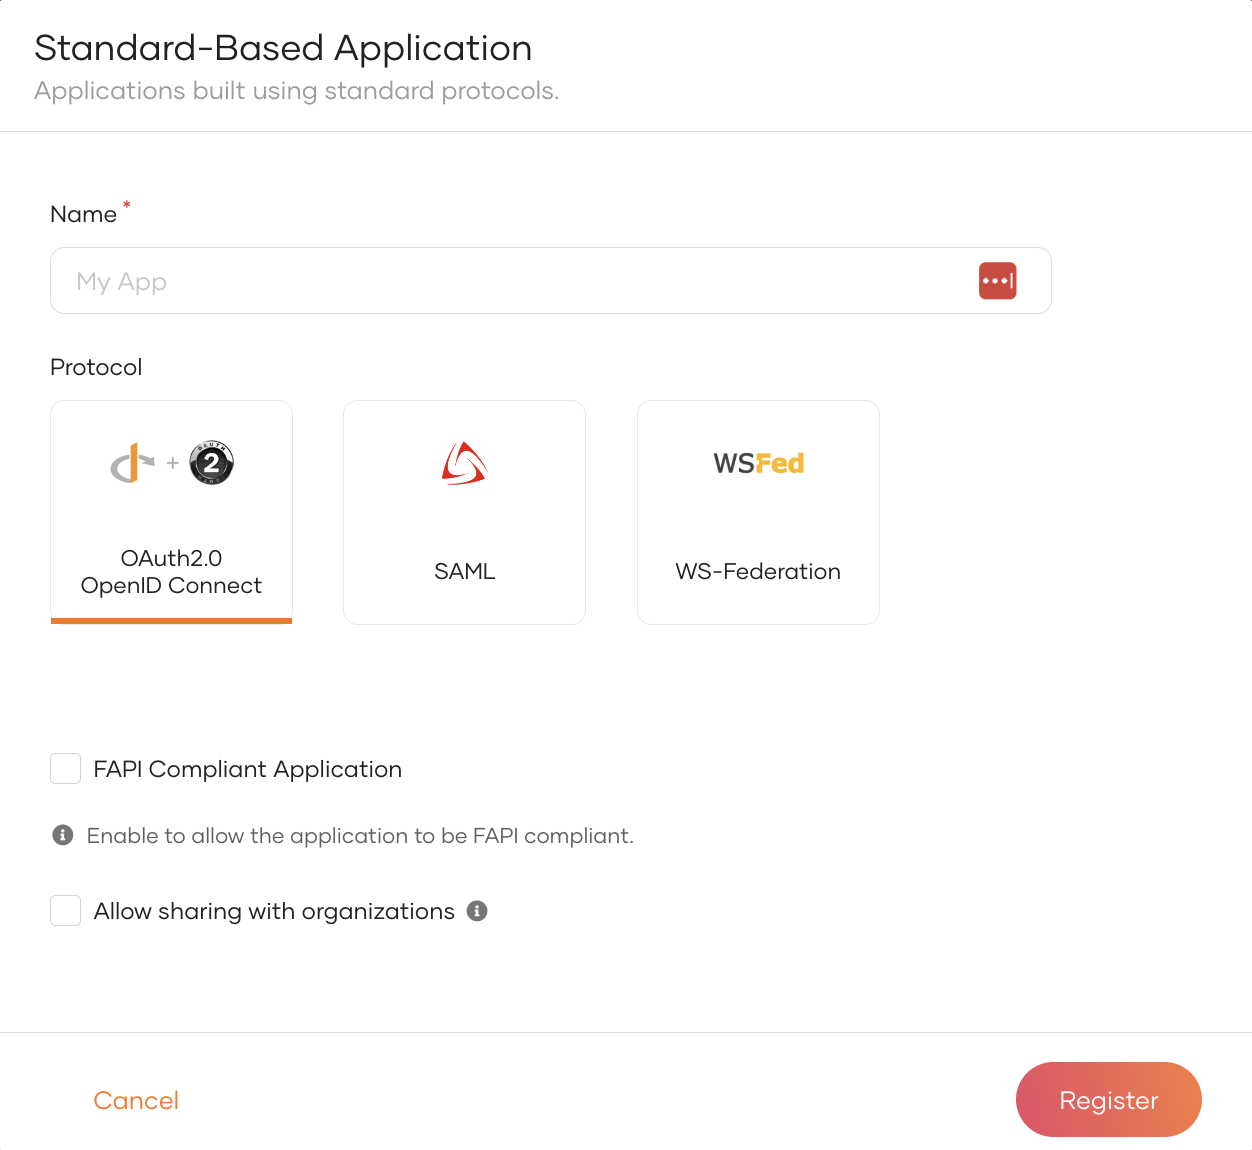 Register a standard-based application